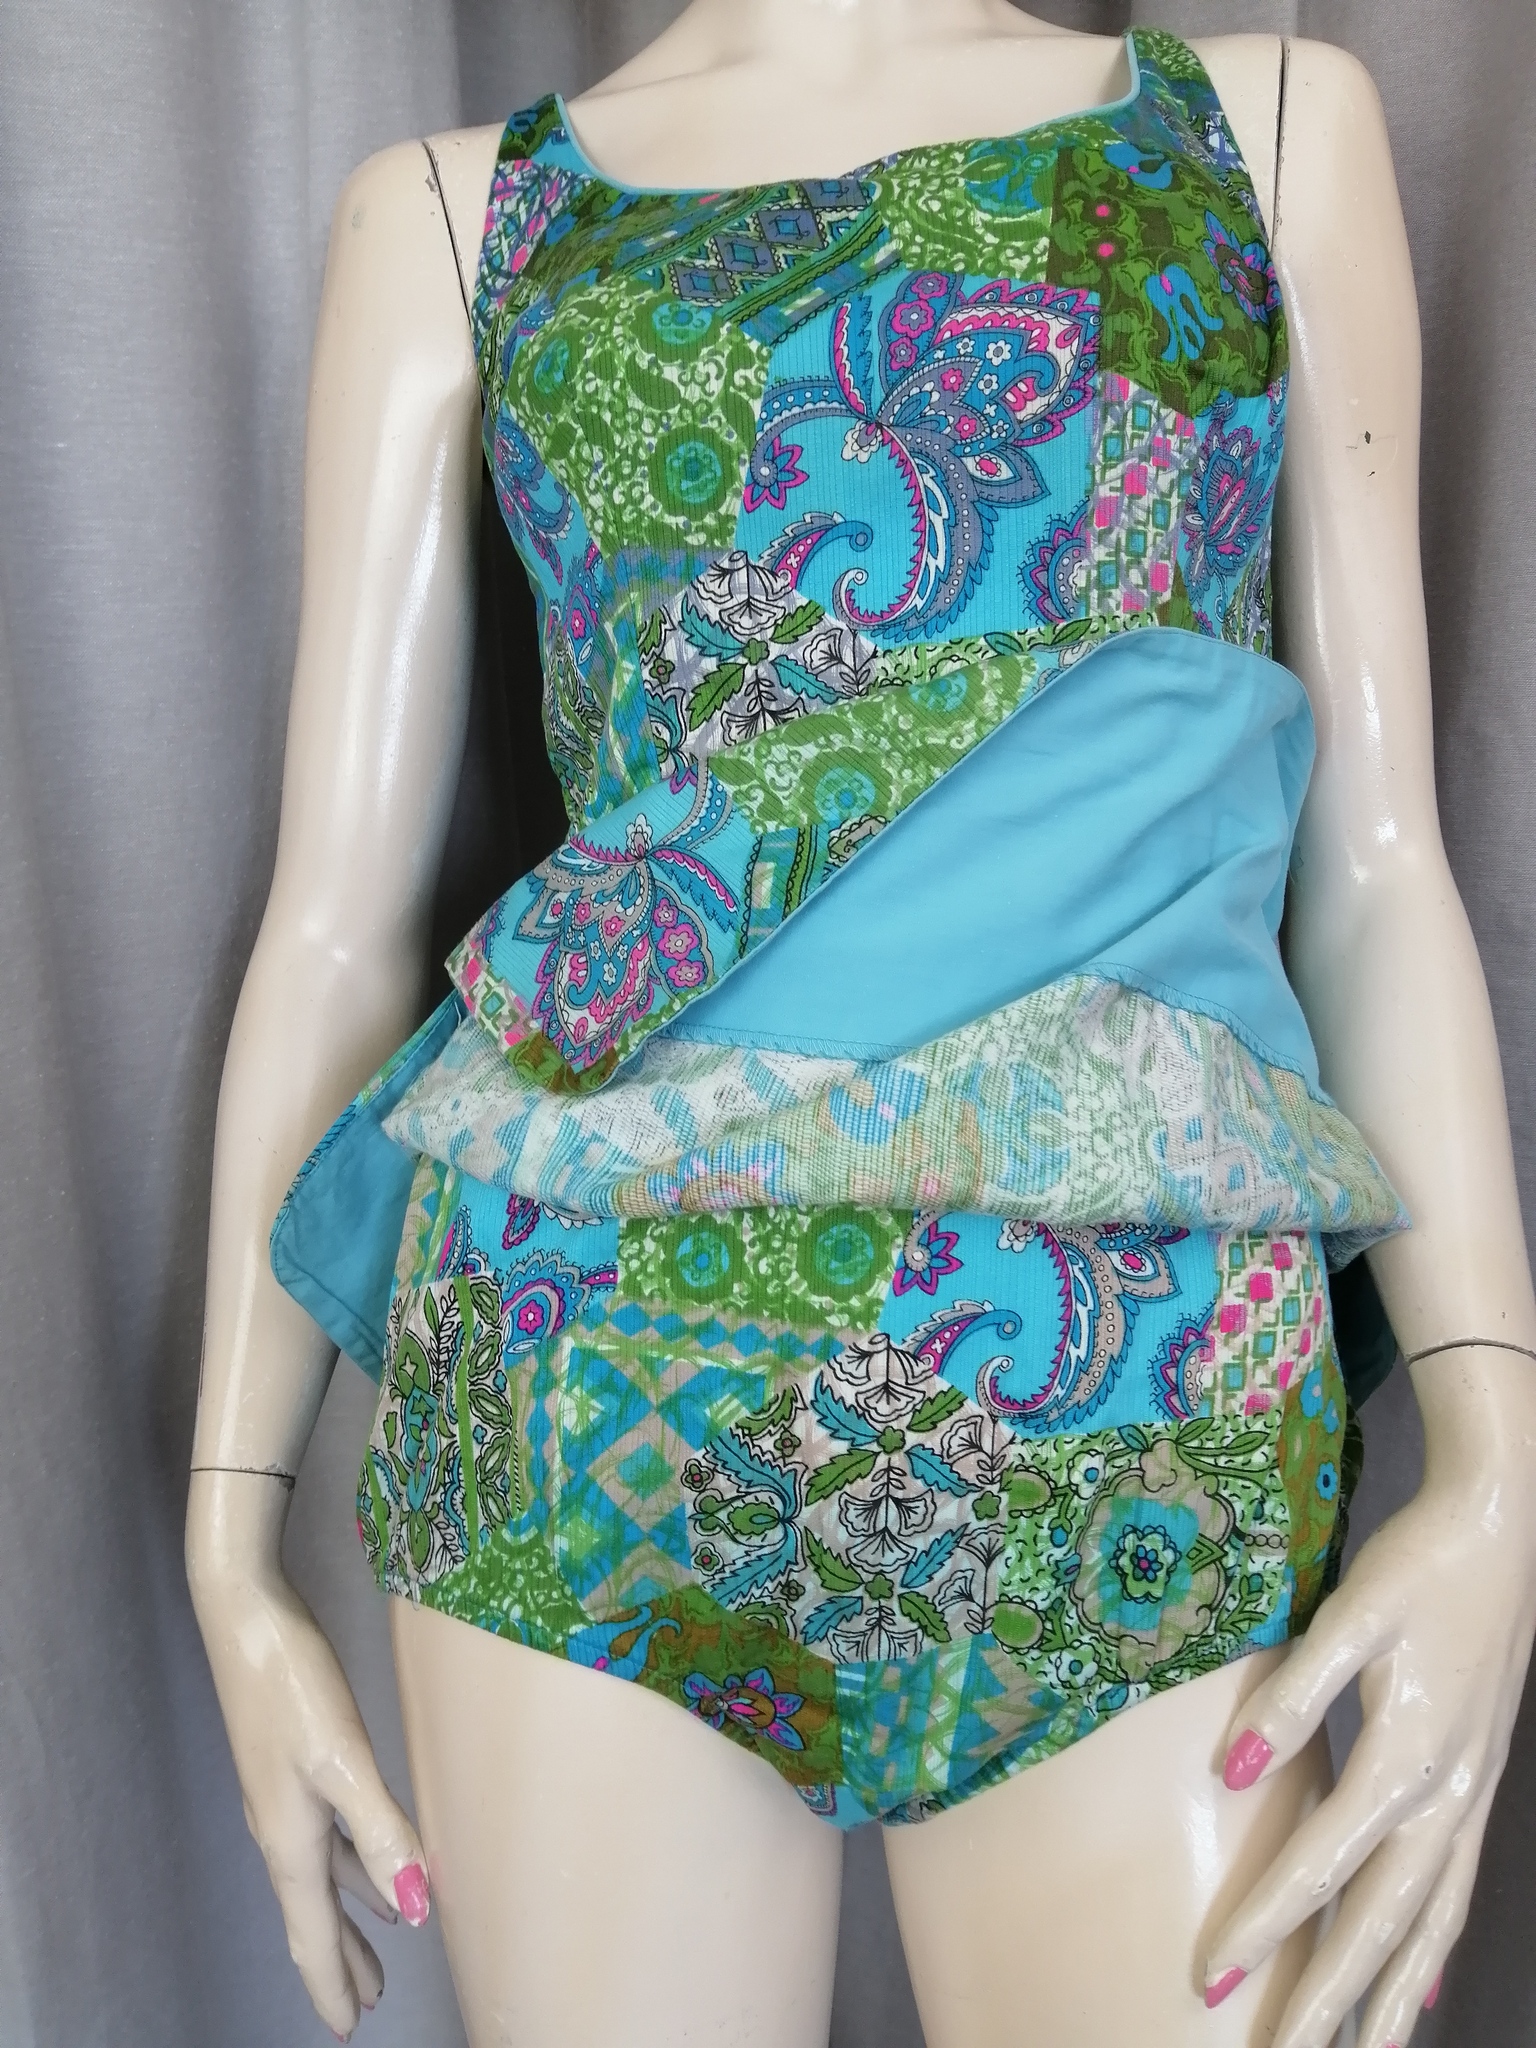 Vintage baddräkt 5060-tal kjol fram bak mönstrad turkos grön cerise dragledja bak smock